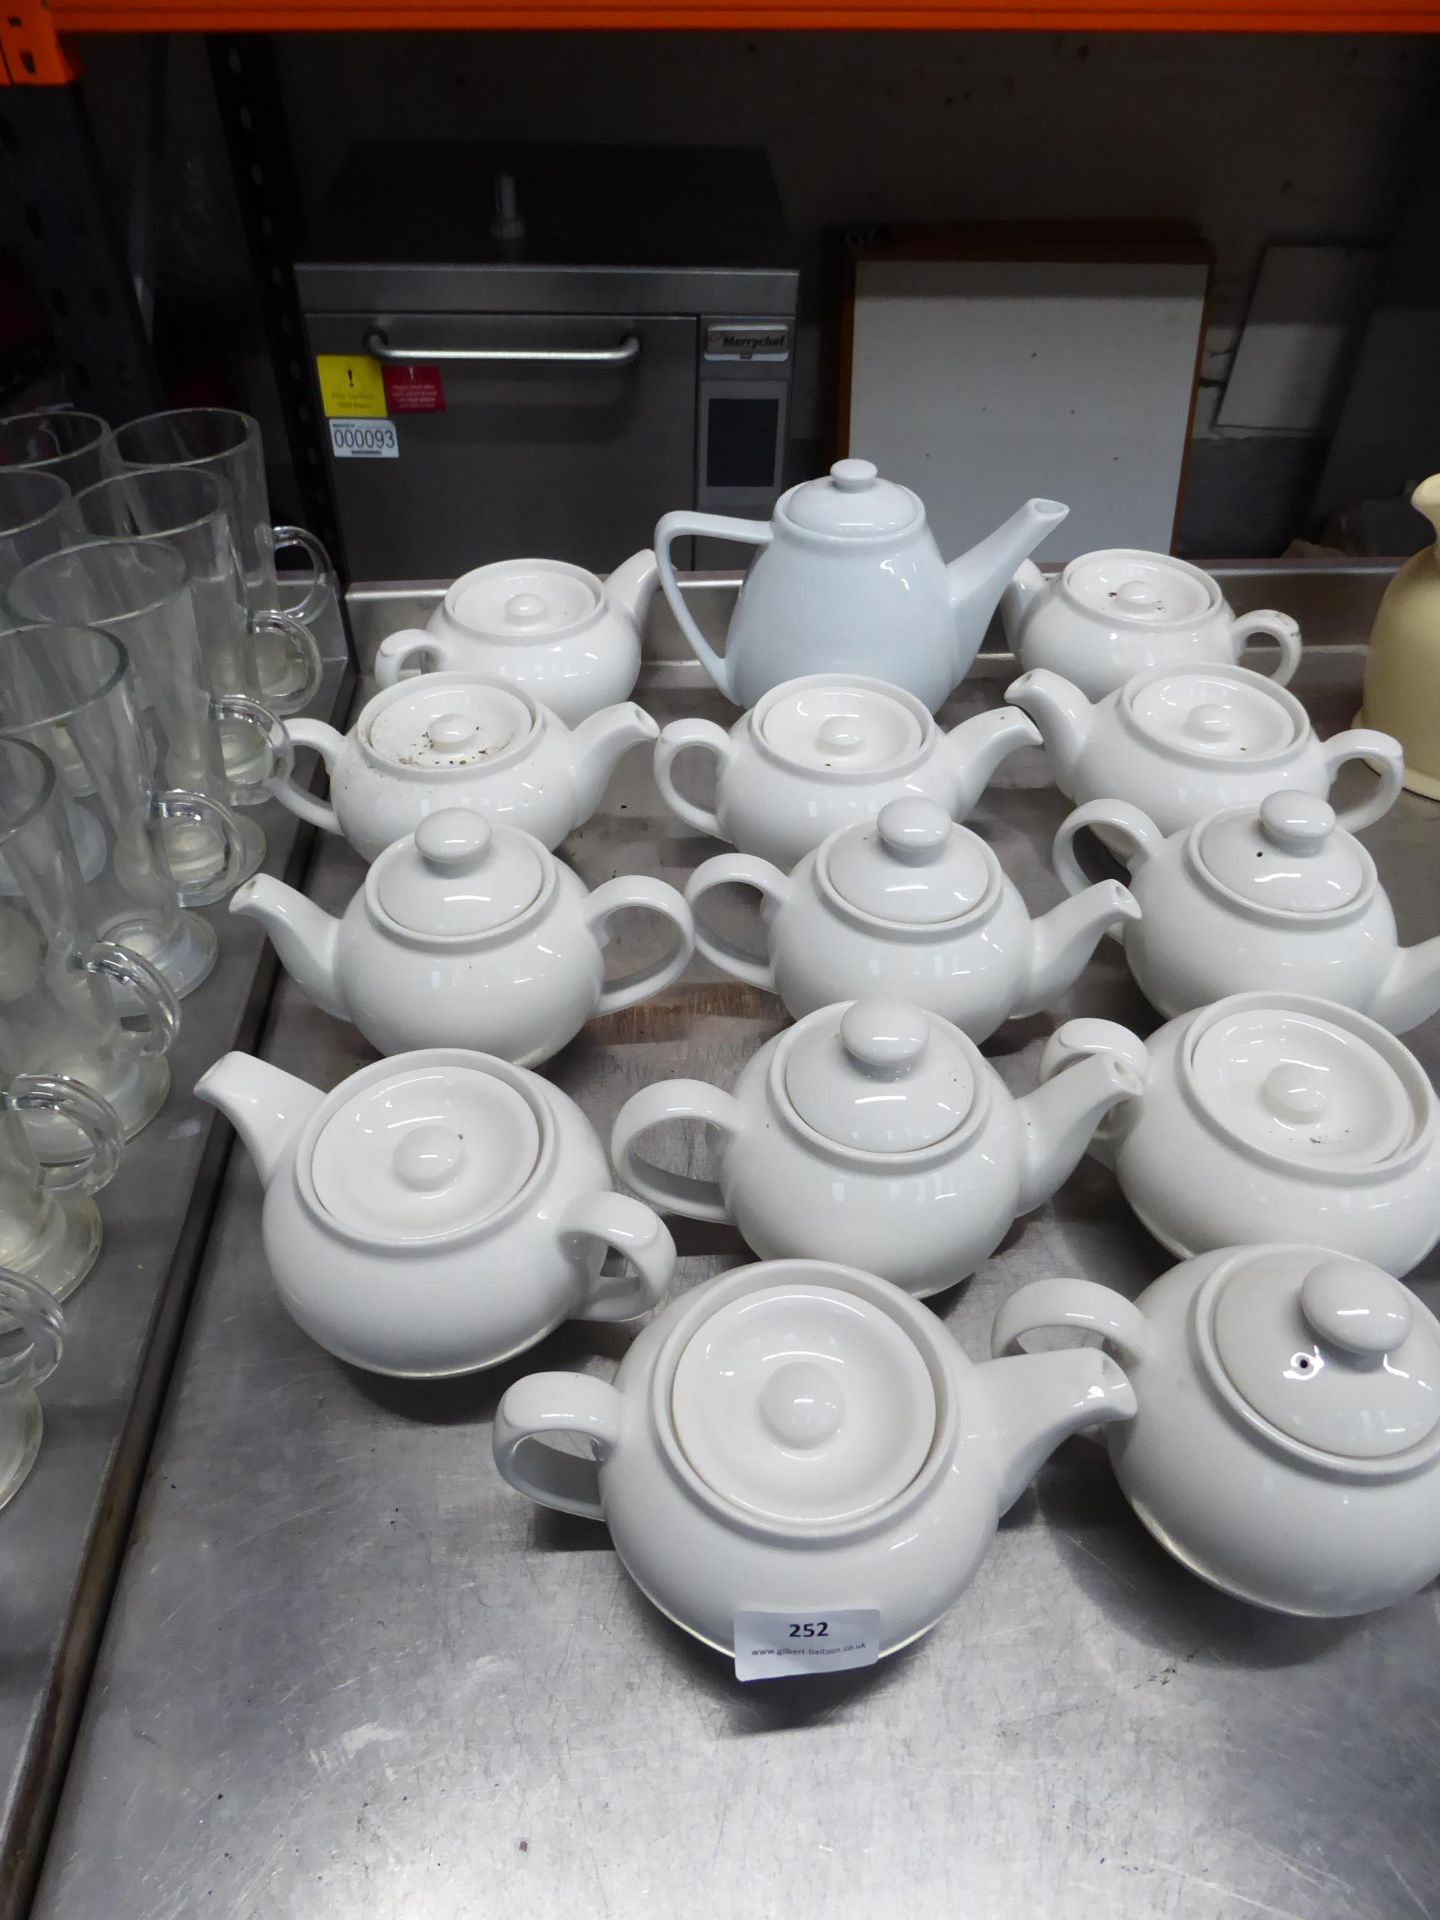 * teapots